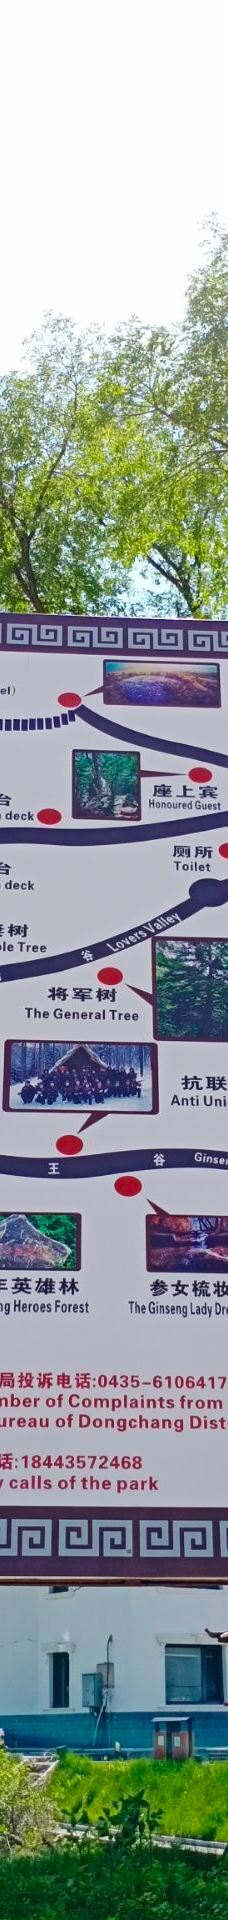 白鸡峰森林公园-通化